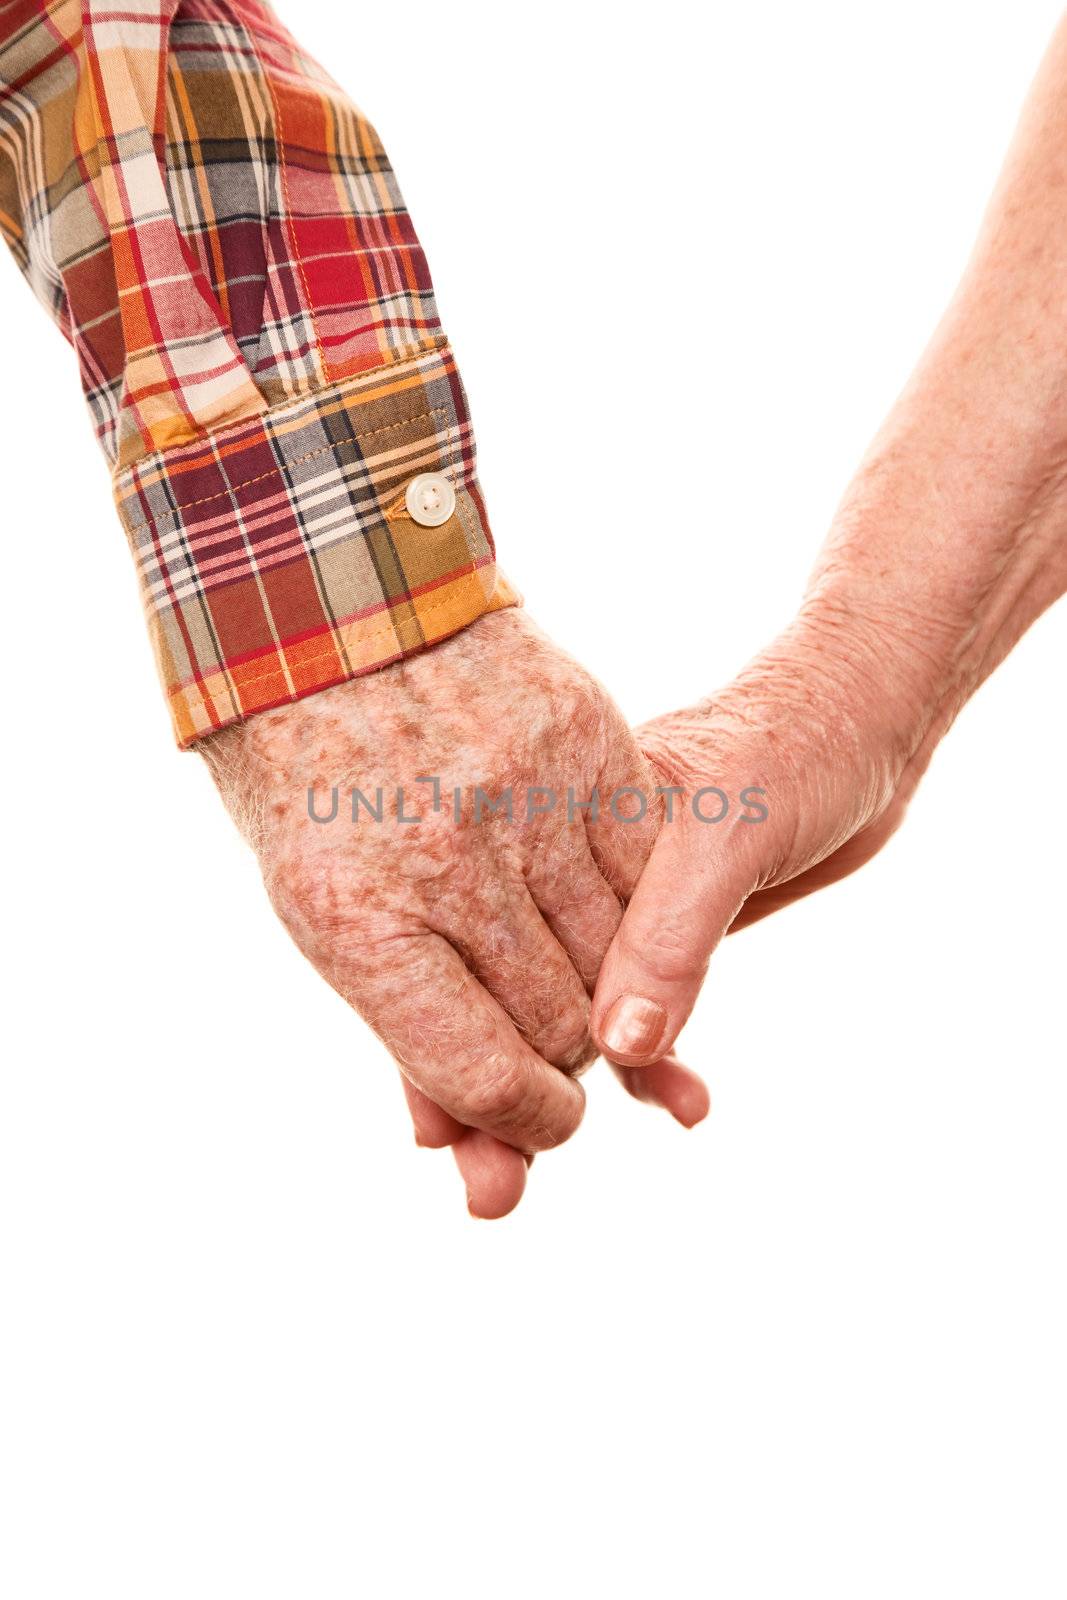 Senior couple holding hands on white bakcground